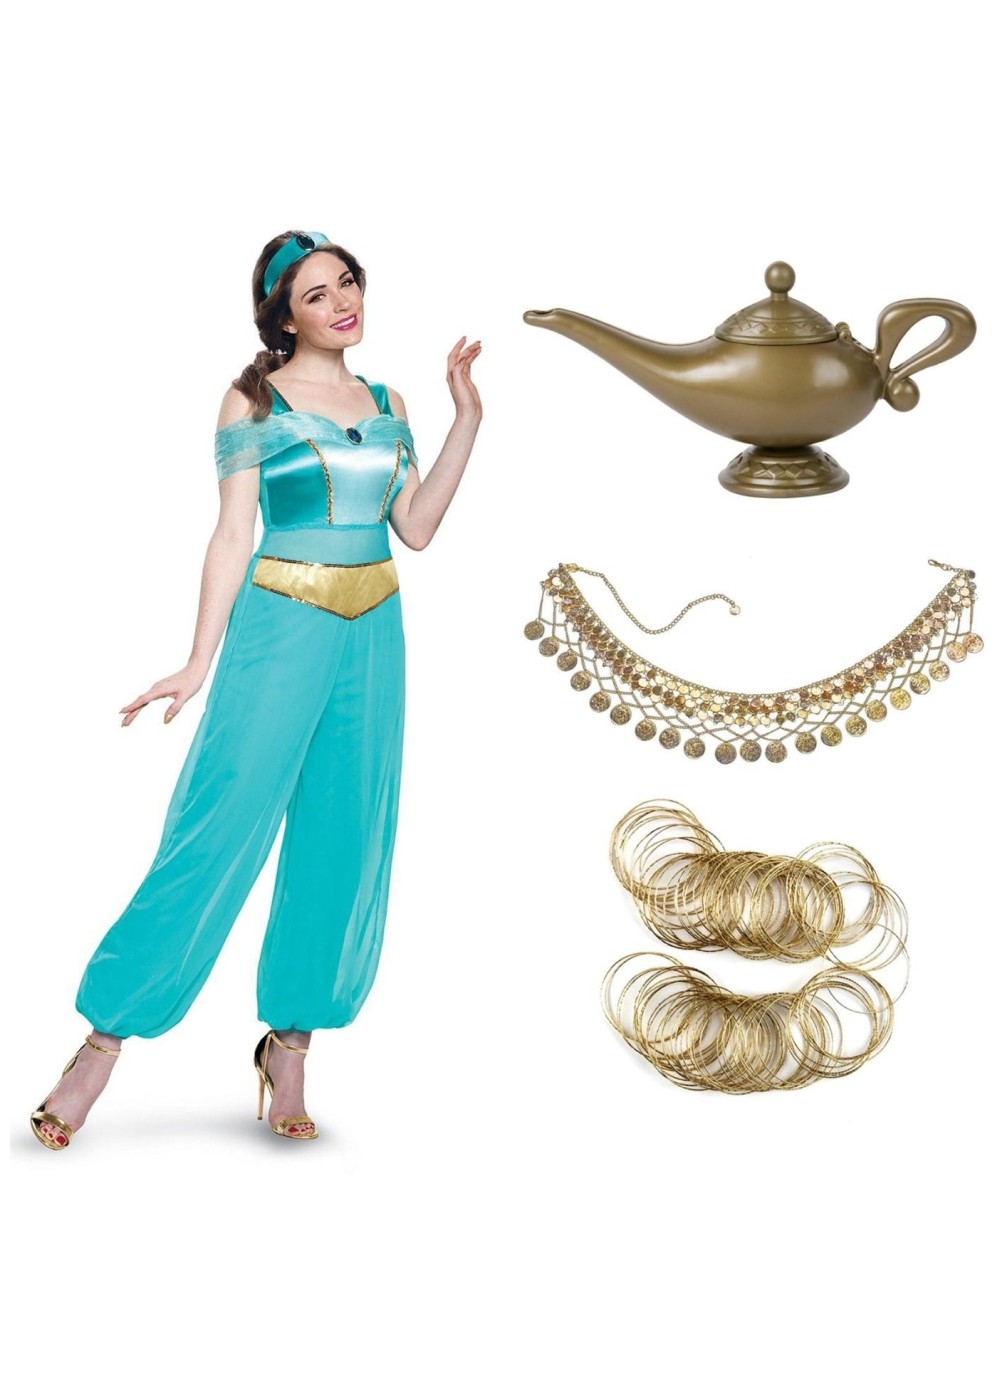 Princess Jasmine Costume Kit